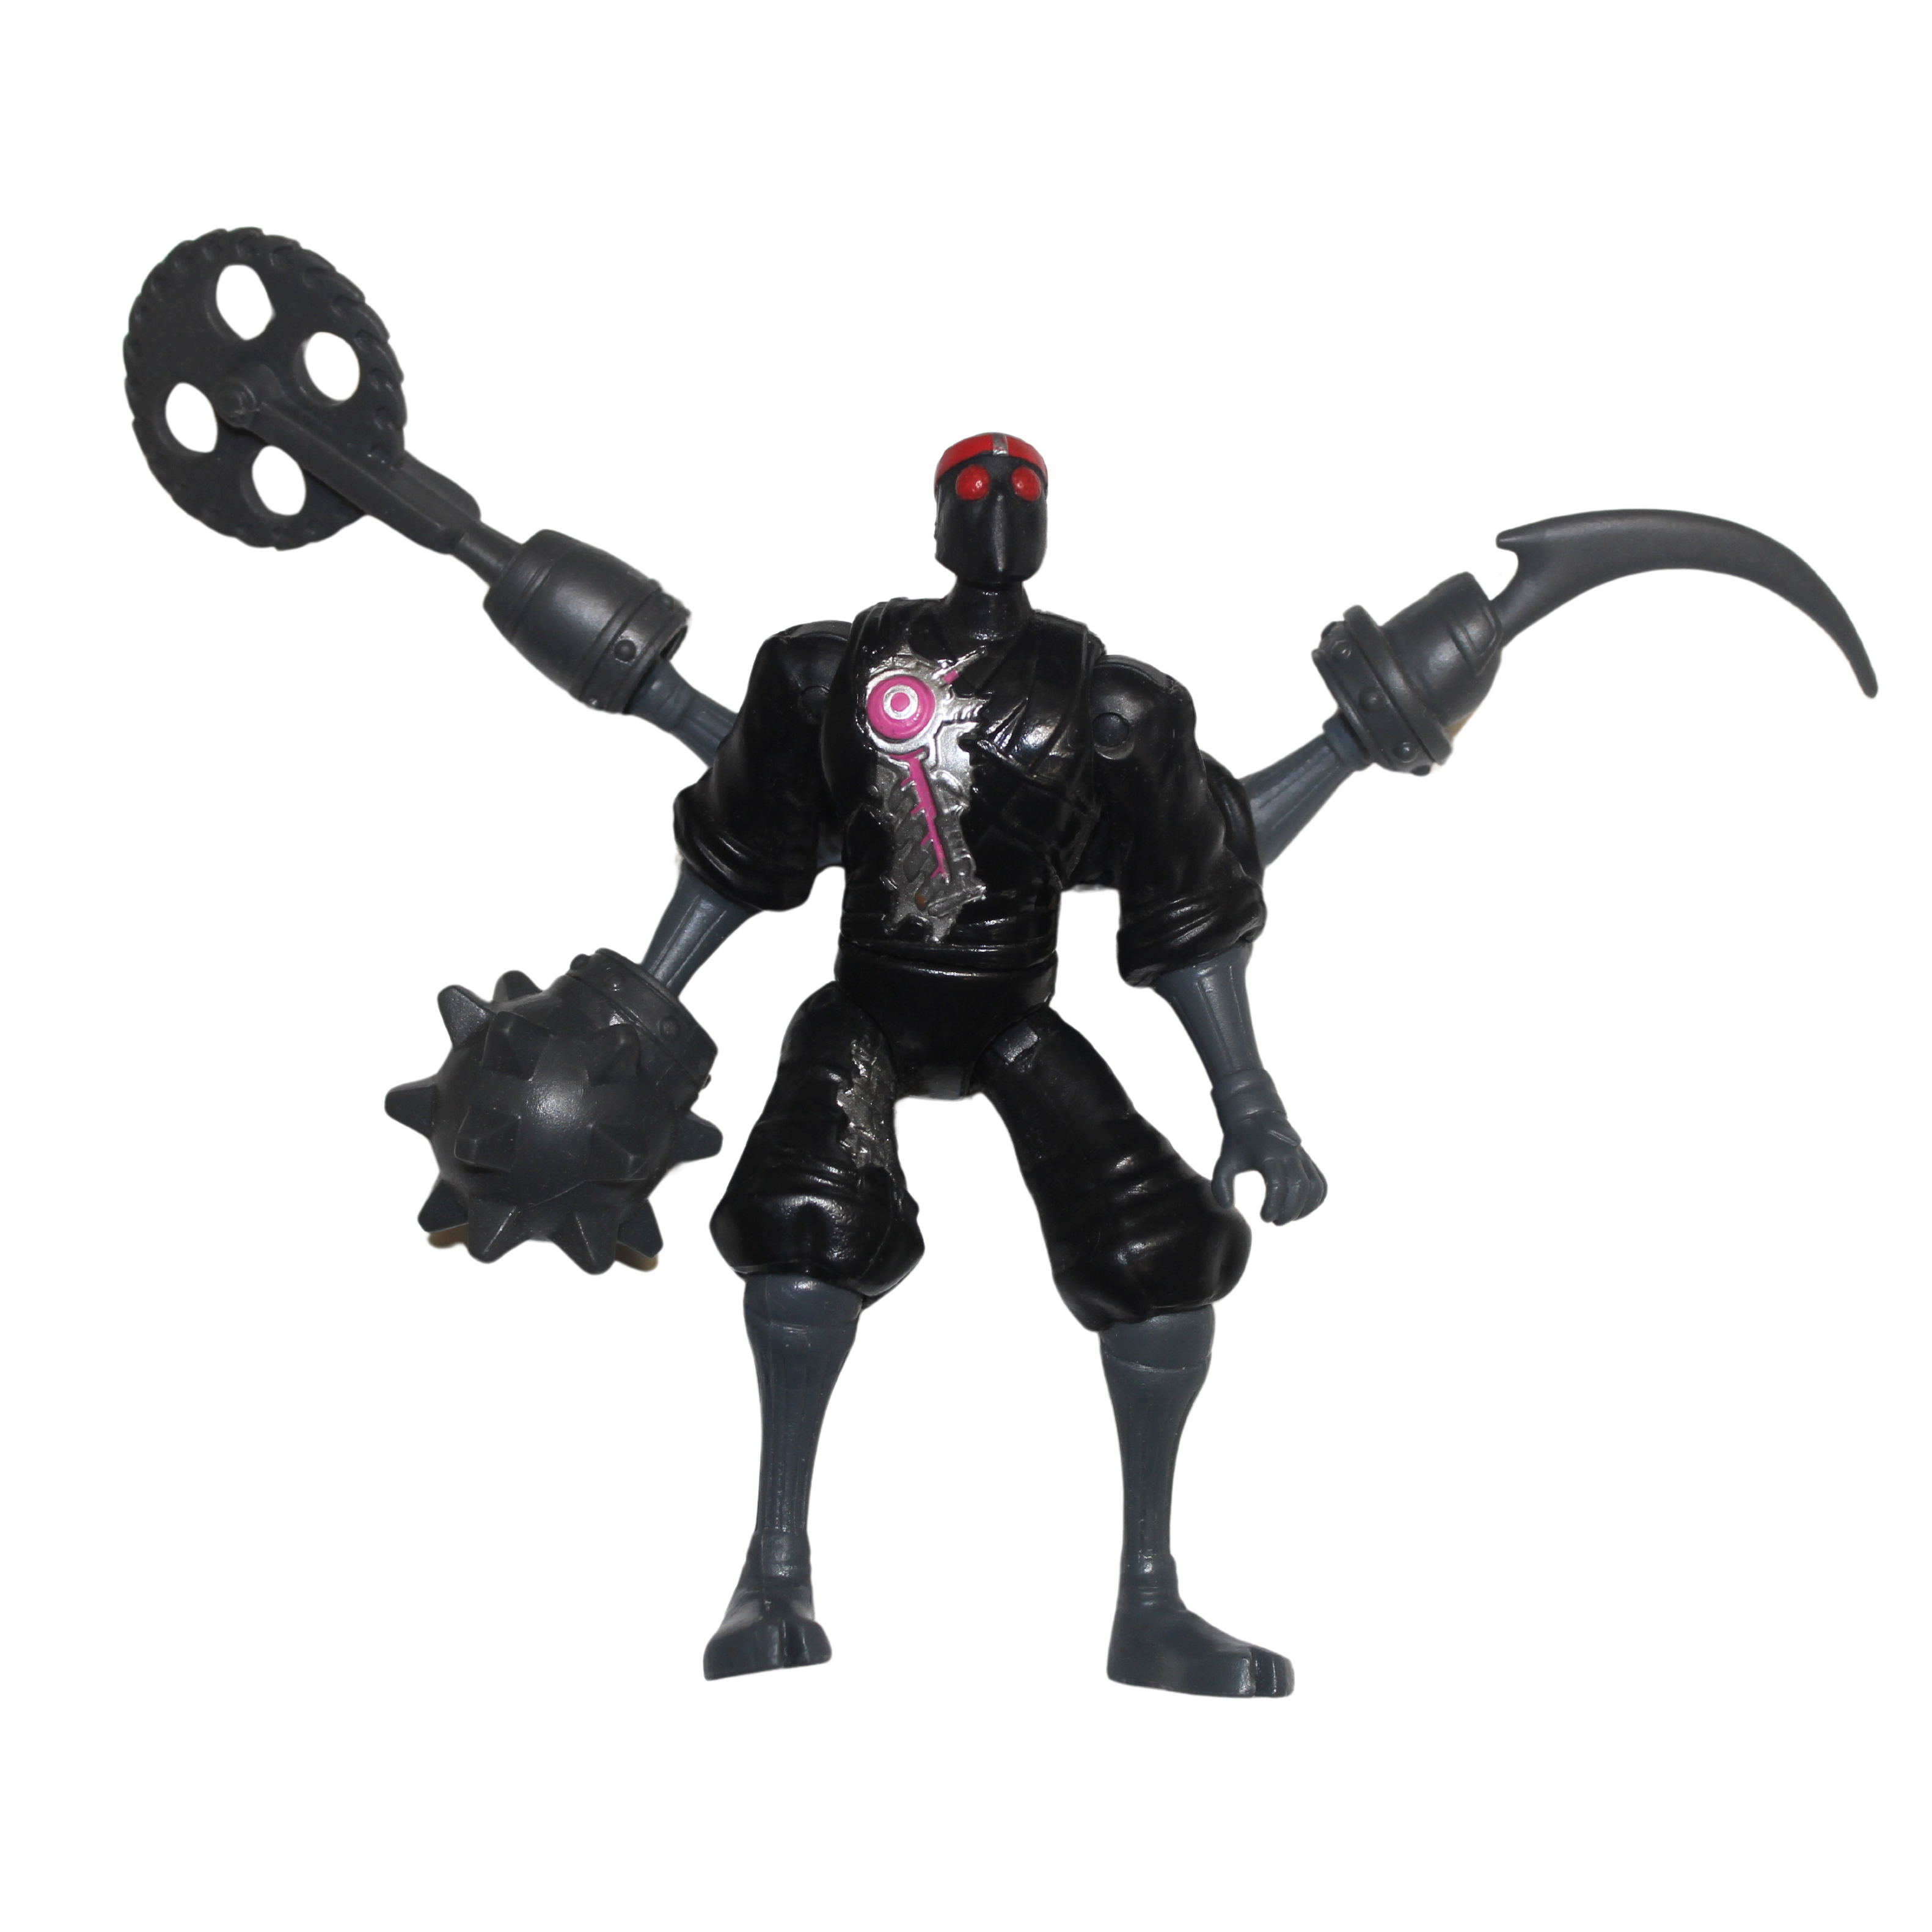 Robotic Foot Soldier Figure - Teenage Mutant Ninja Turtle